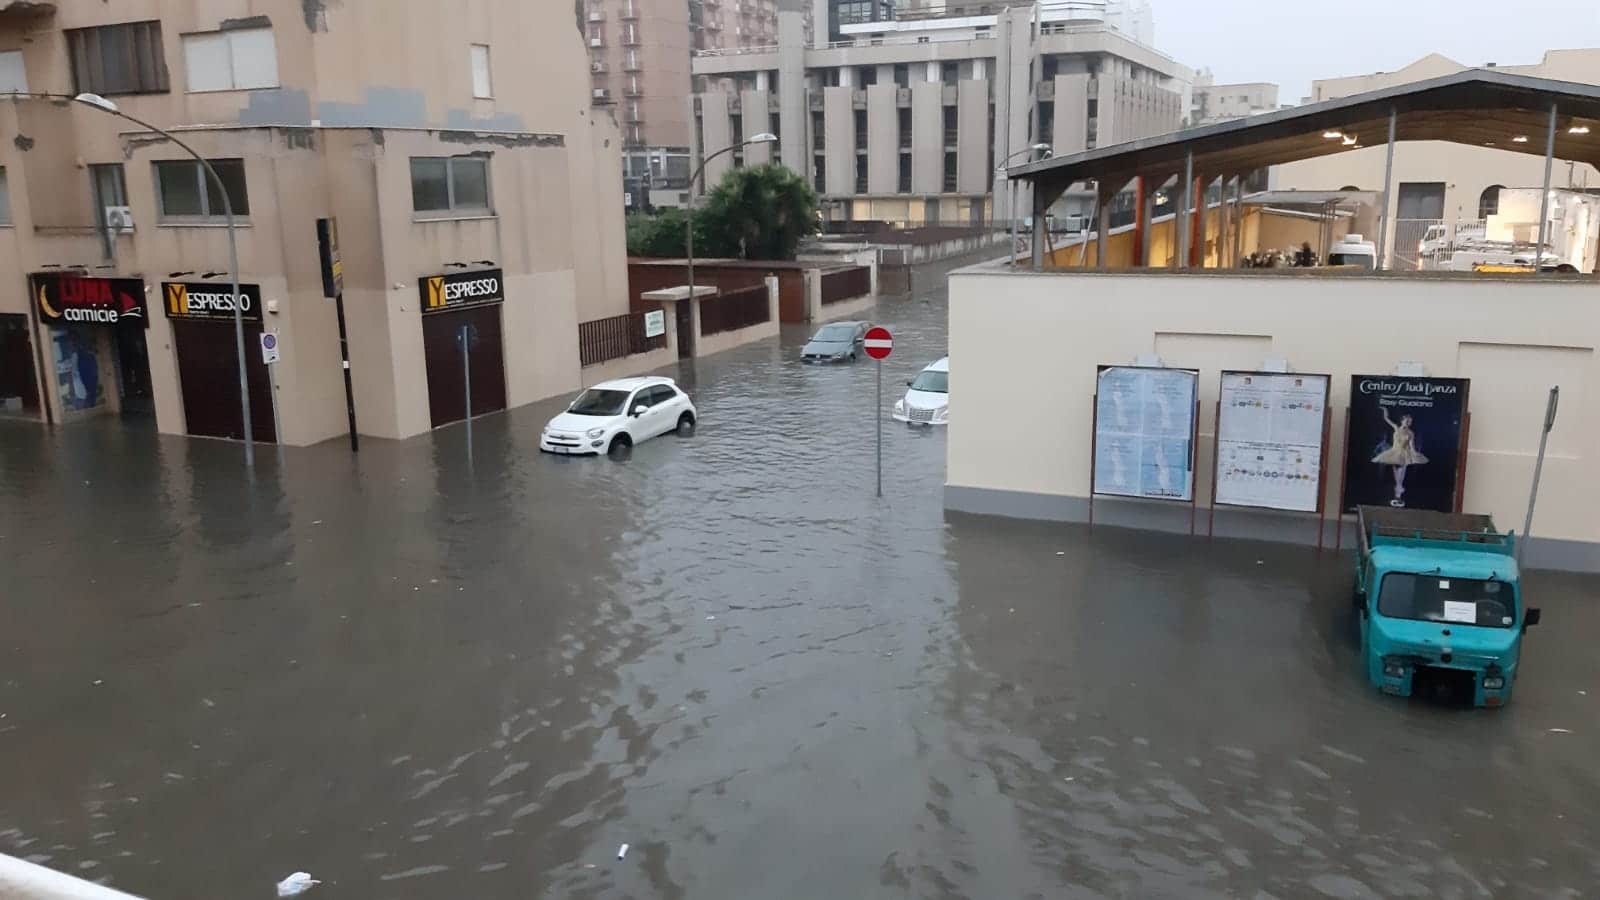 Violento temporale su Trapani, città sommersa dall’acqua: disposta la chiusura delle scuole – FOTO